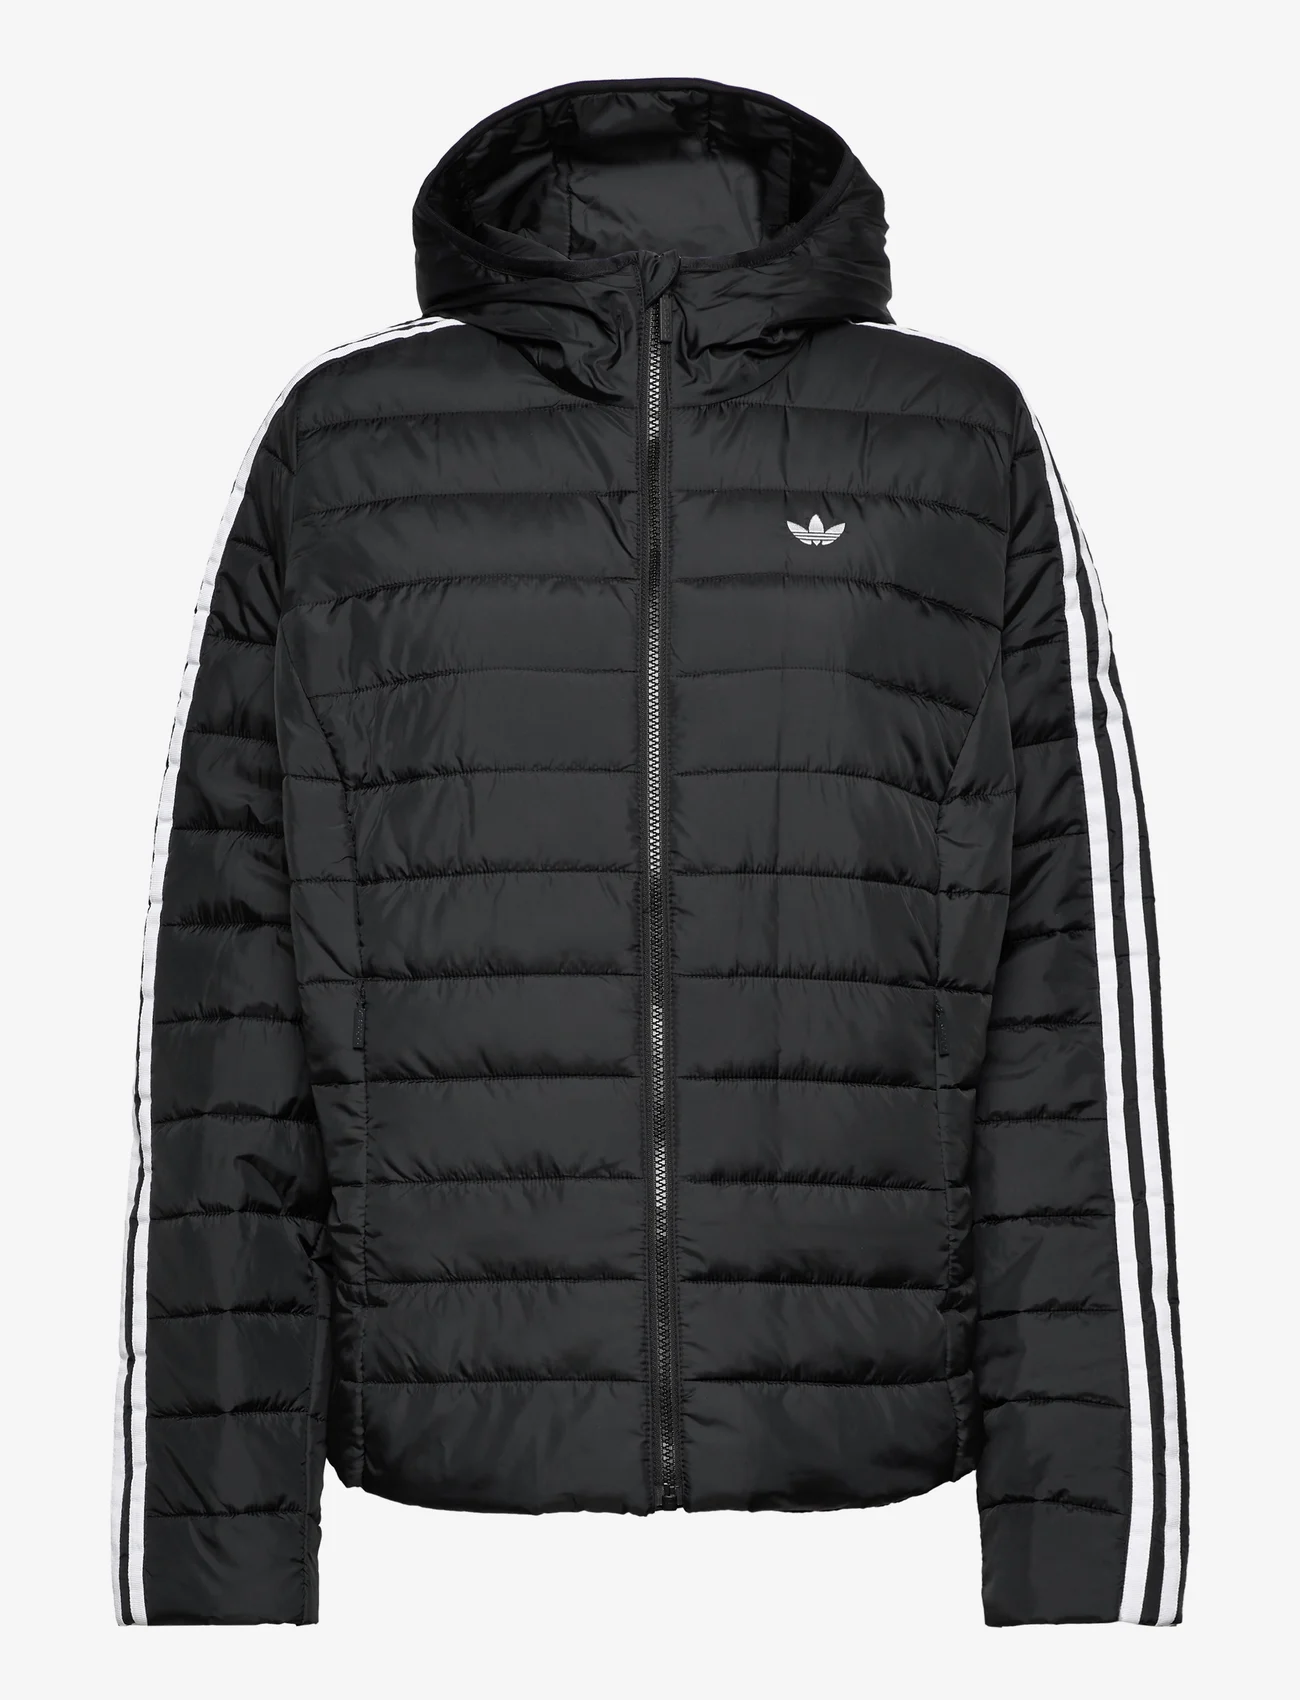 adidas Originals - Hooded Premium Slim Jacket (Plus Size) - Žieminės striukės - black - 0